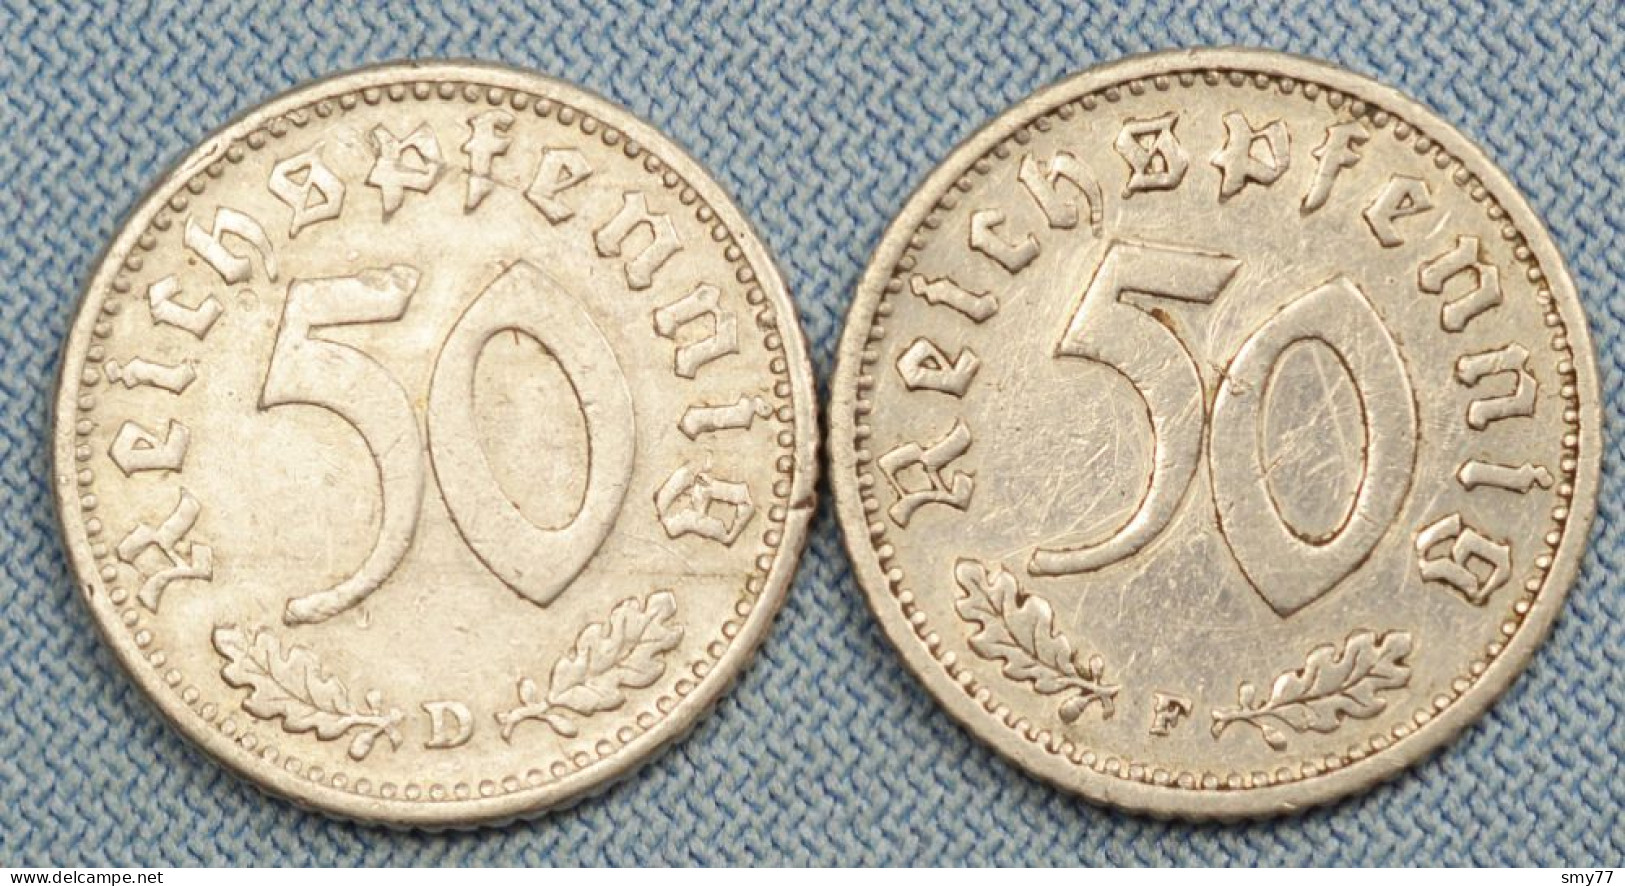 3 Reich • Lot 2x • 50 Pfennig • 1940 D + 1940 F •  Reichspfennig • Deutsches Reich / Germany / Allemagne •  [24-703] - 50 Reichspfennig